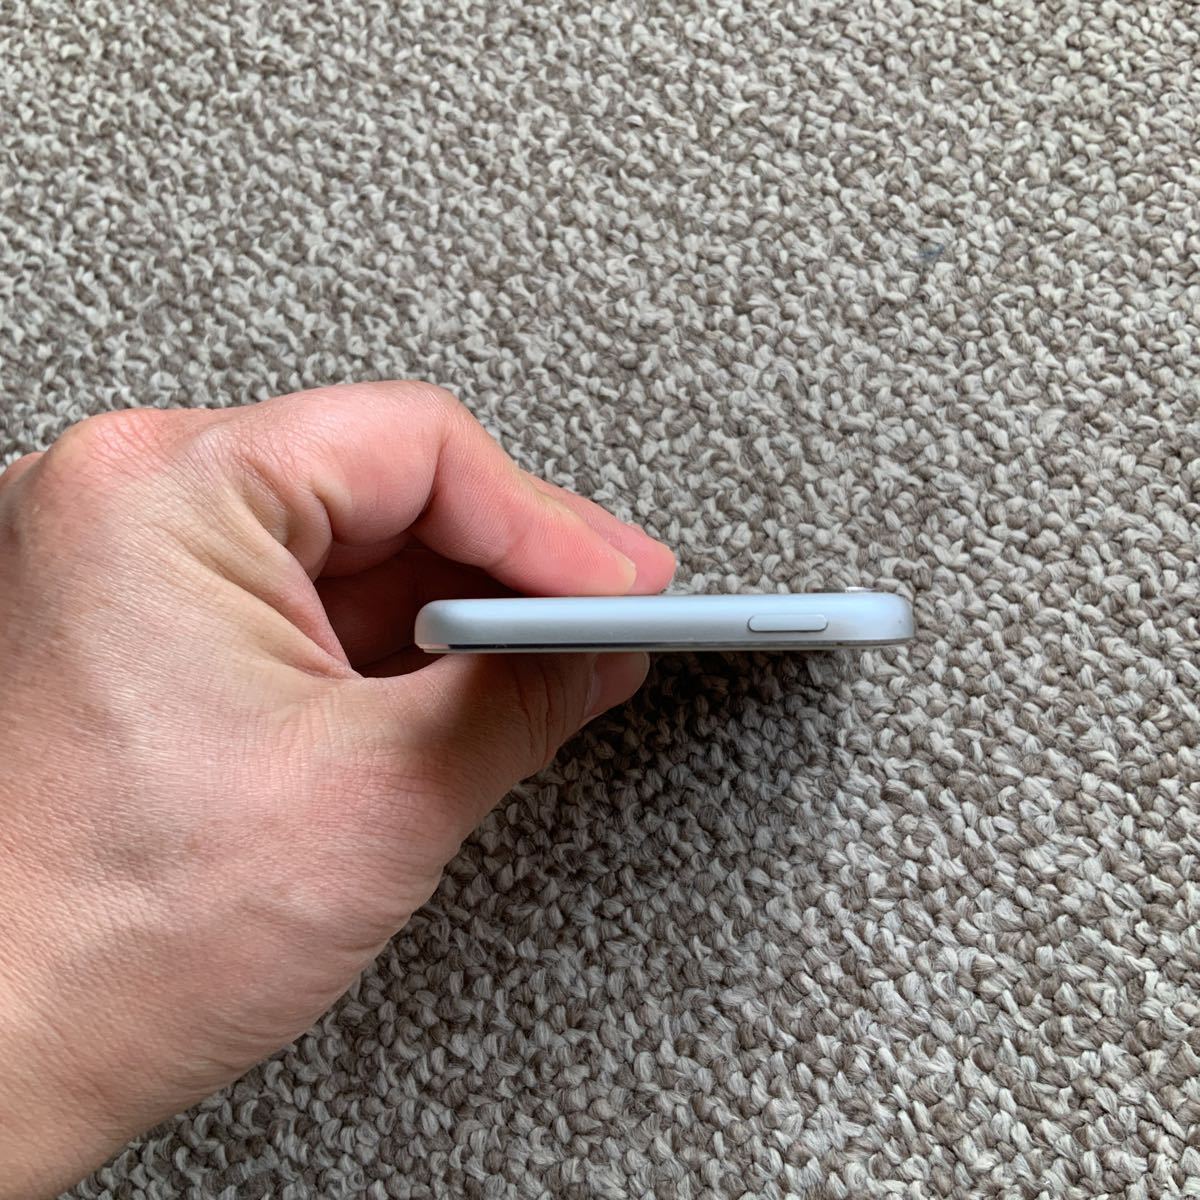 [ бесплатная доставка ]iPod touch no. 5 поколение 32GB Apple Apple A1421 iPod nano серебряный корпус 